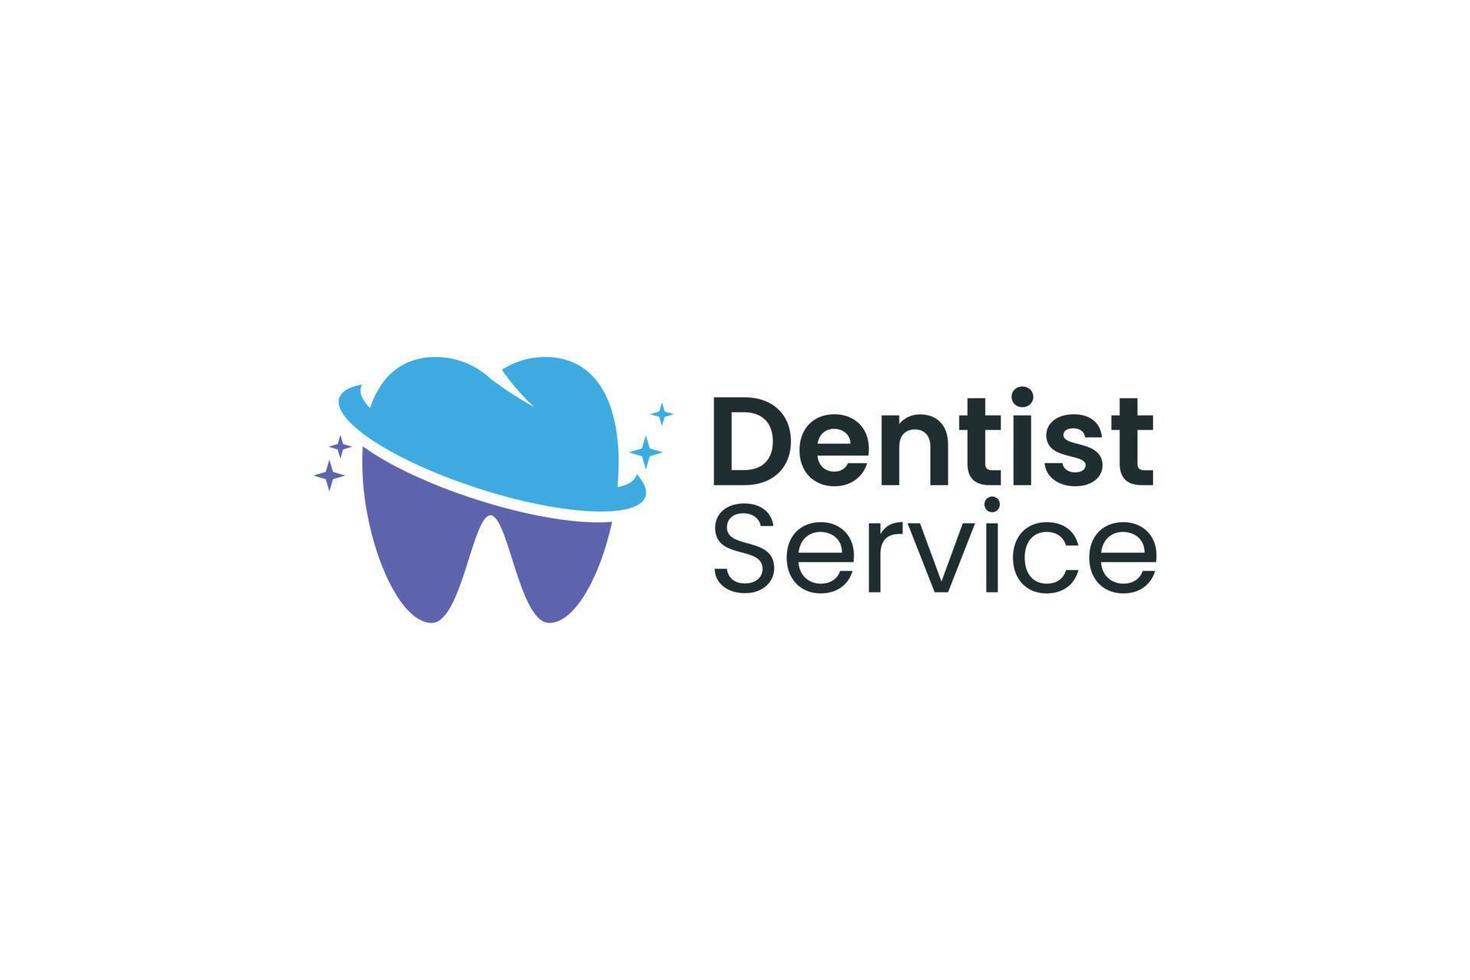 Zahnarzt Service Zahn kieferorthopädische Logo Design Vektor